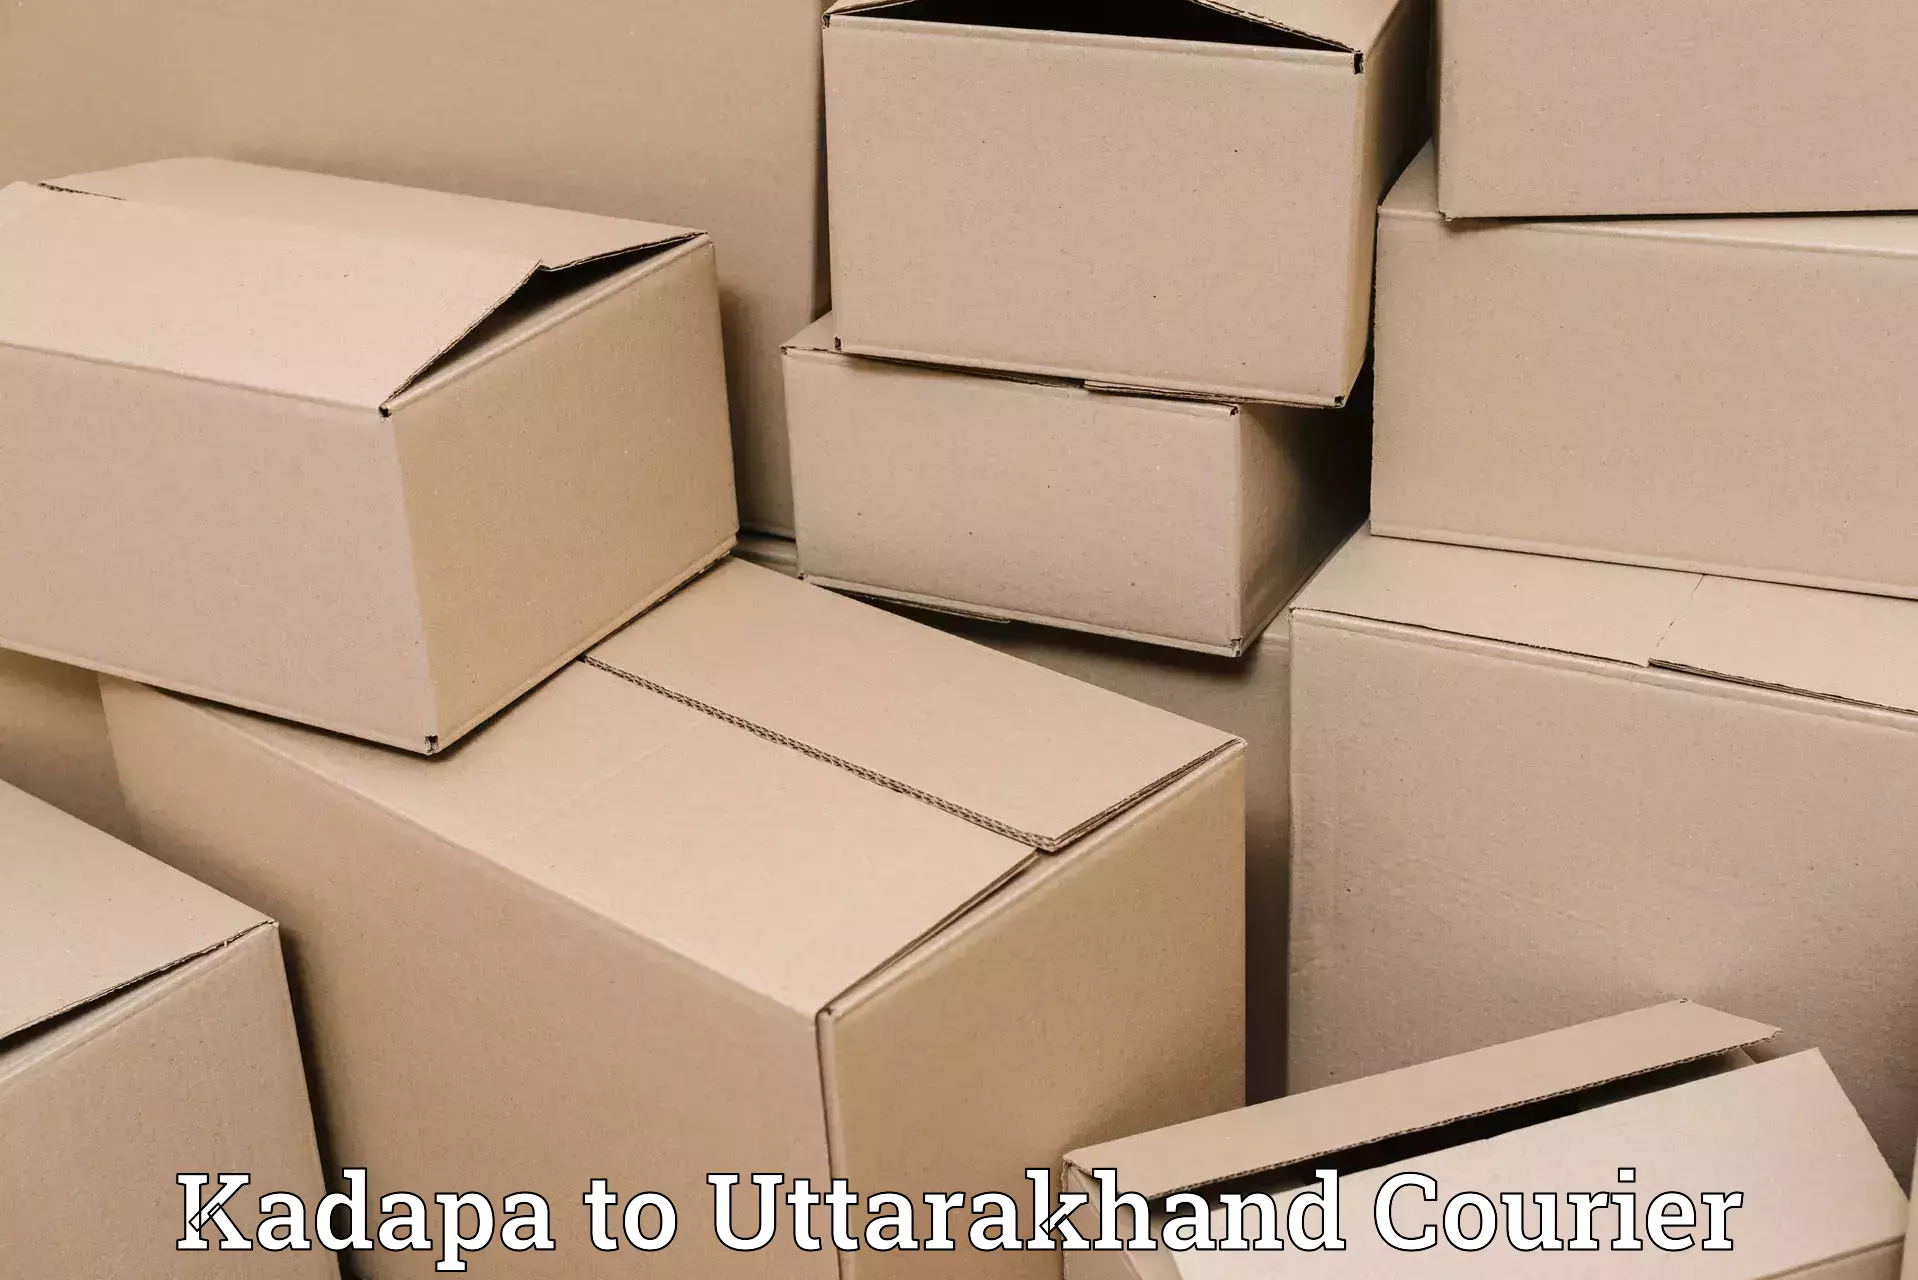 Premium delivery services in Kadapa to Nainital